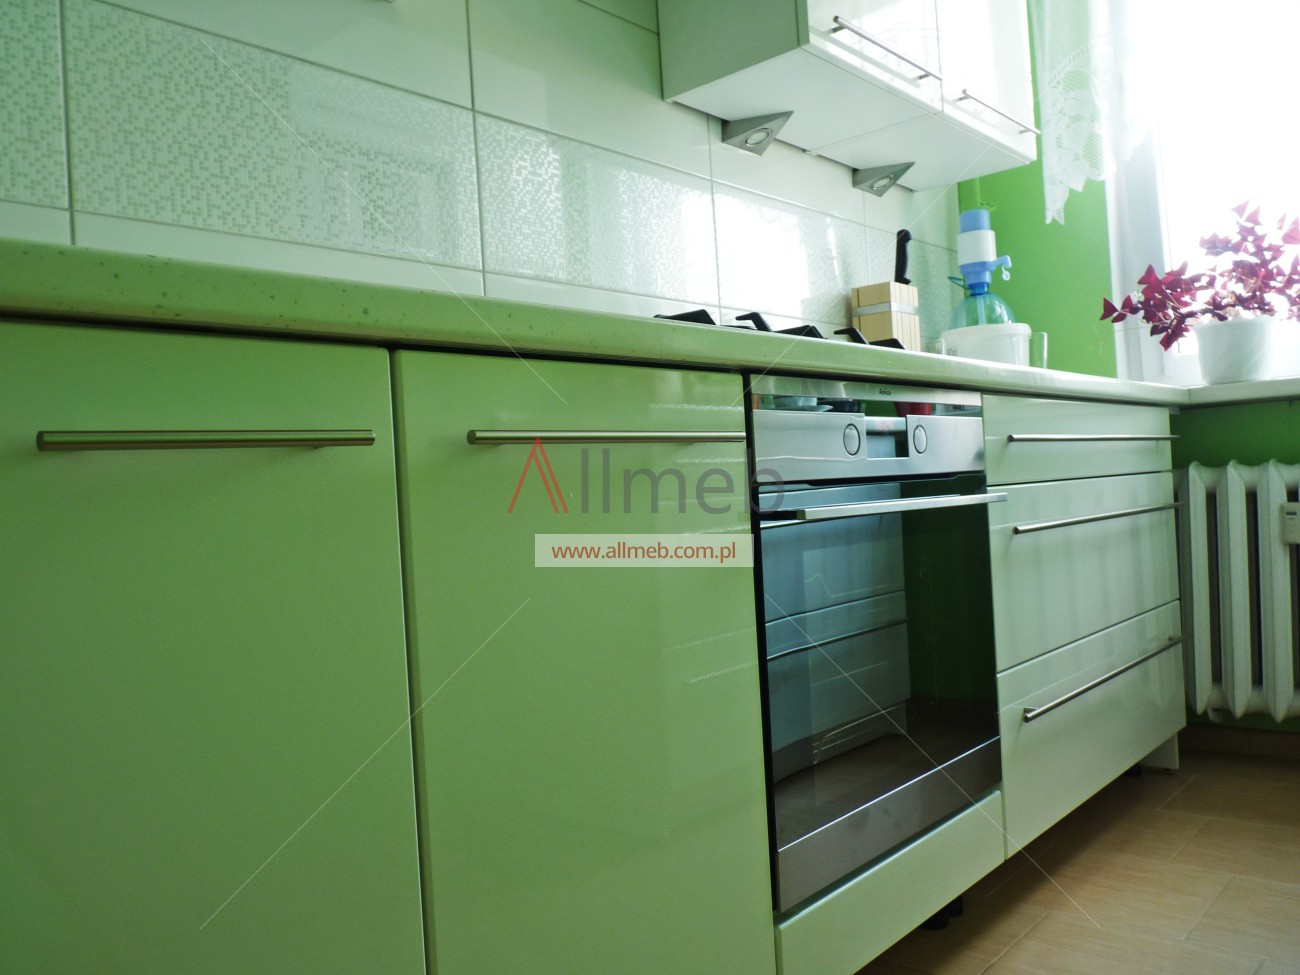 green zielone szafki kuchenne z zabudowanym piekarnikiem